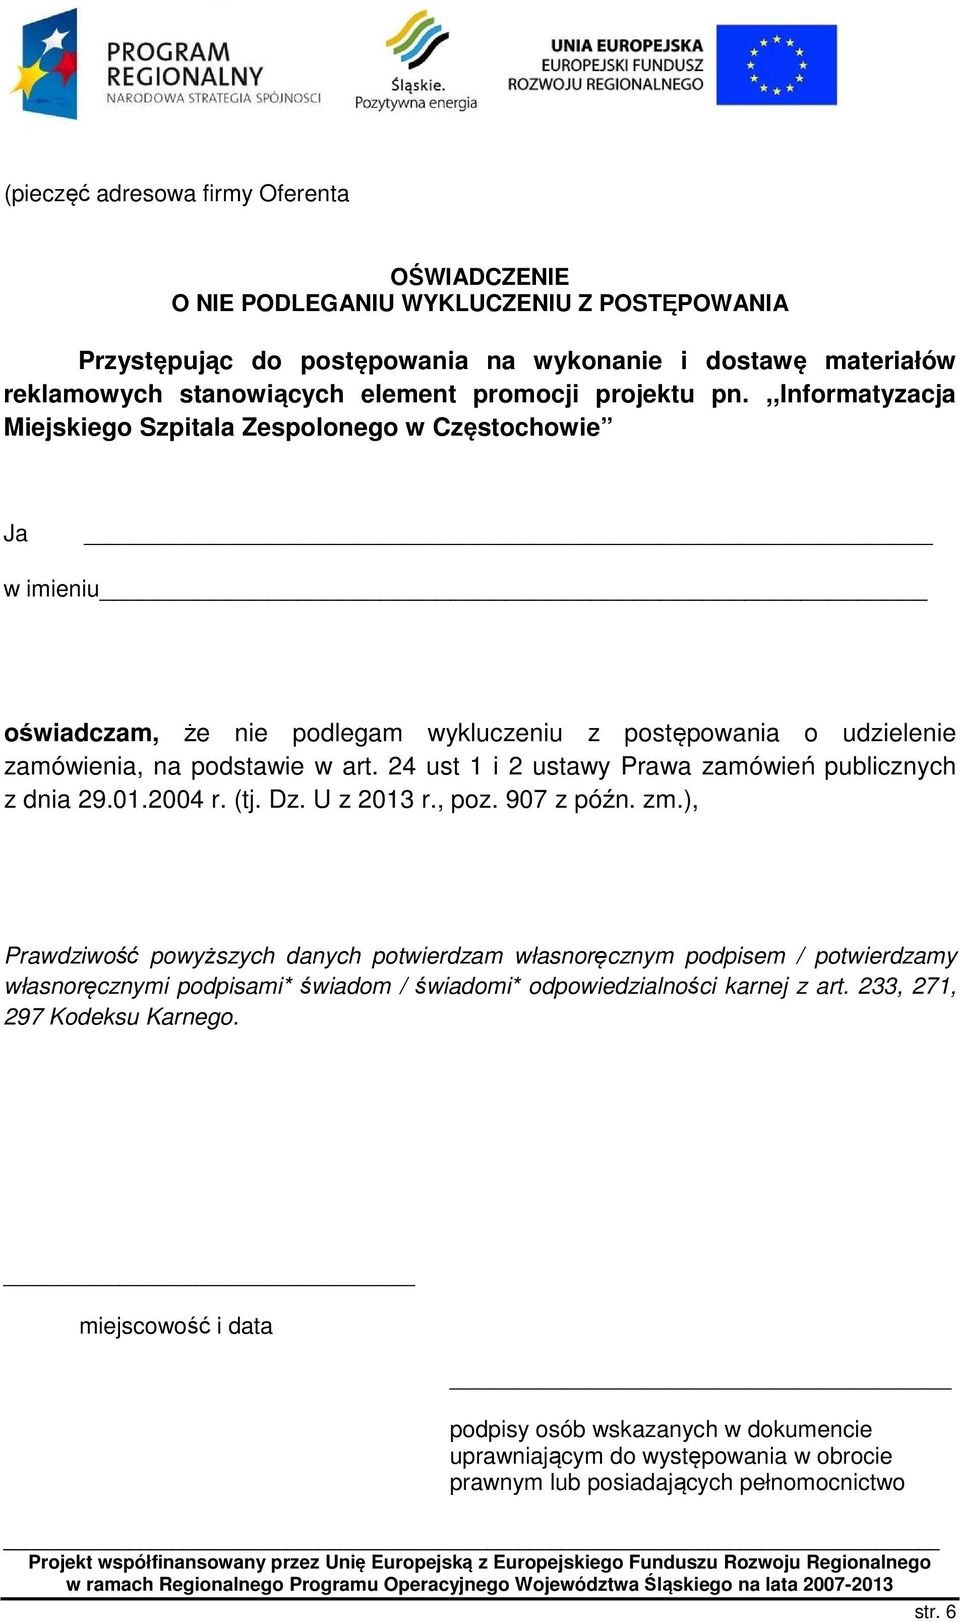 24 ust 1 i 2 ustawy Prawa zamówień publicznych z dnia 29.01.2004 r. (tj. Dz. U z 2013 r., poz. 907 z późn. zm.